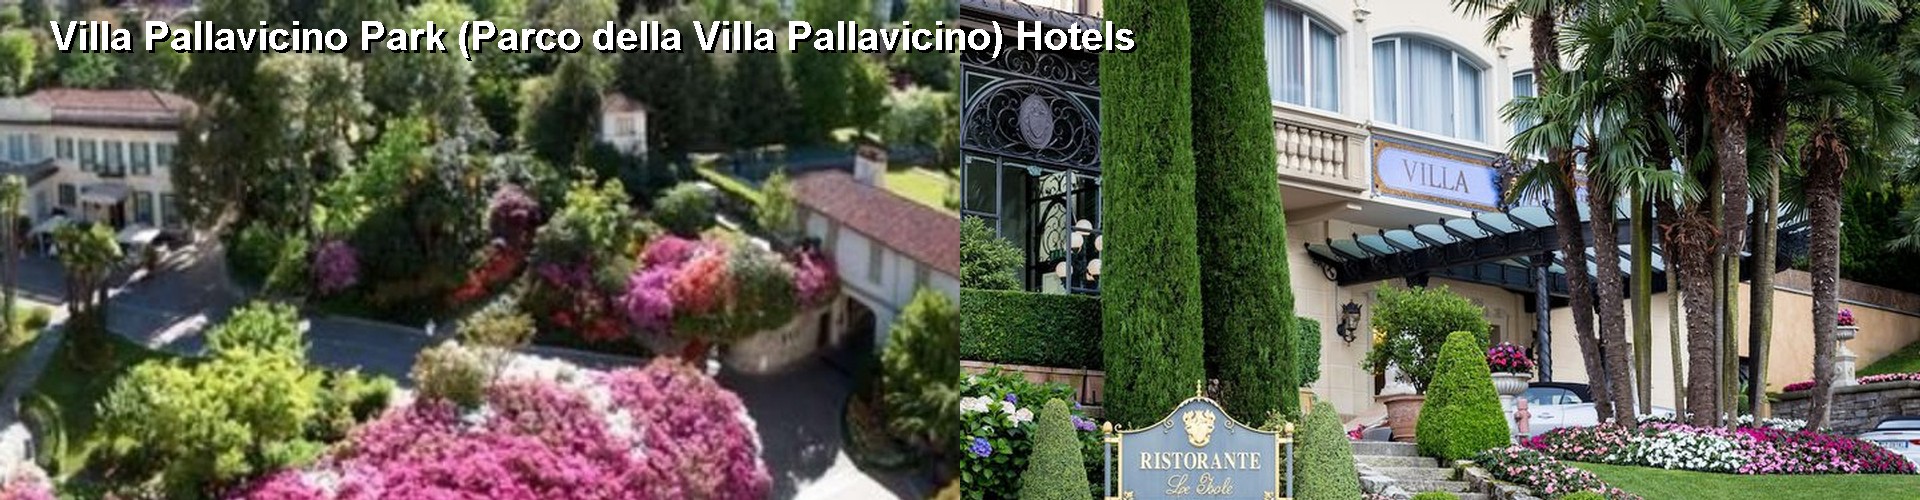 5 Best Hotels near Villa Pallavicino Park (Parco della Villa Pallavicino)